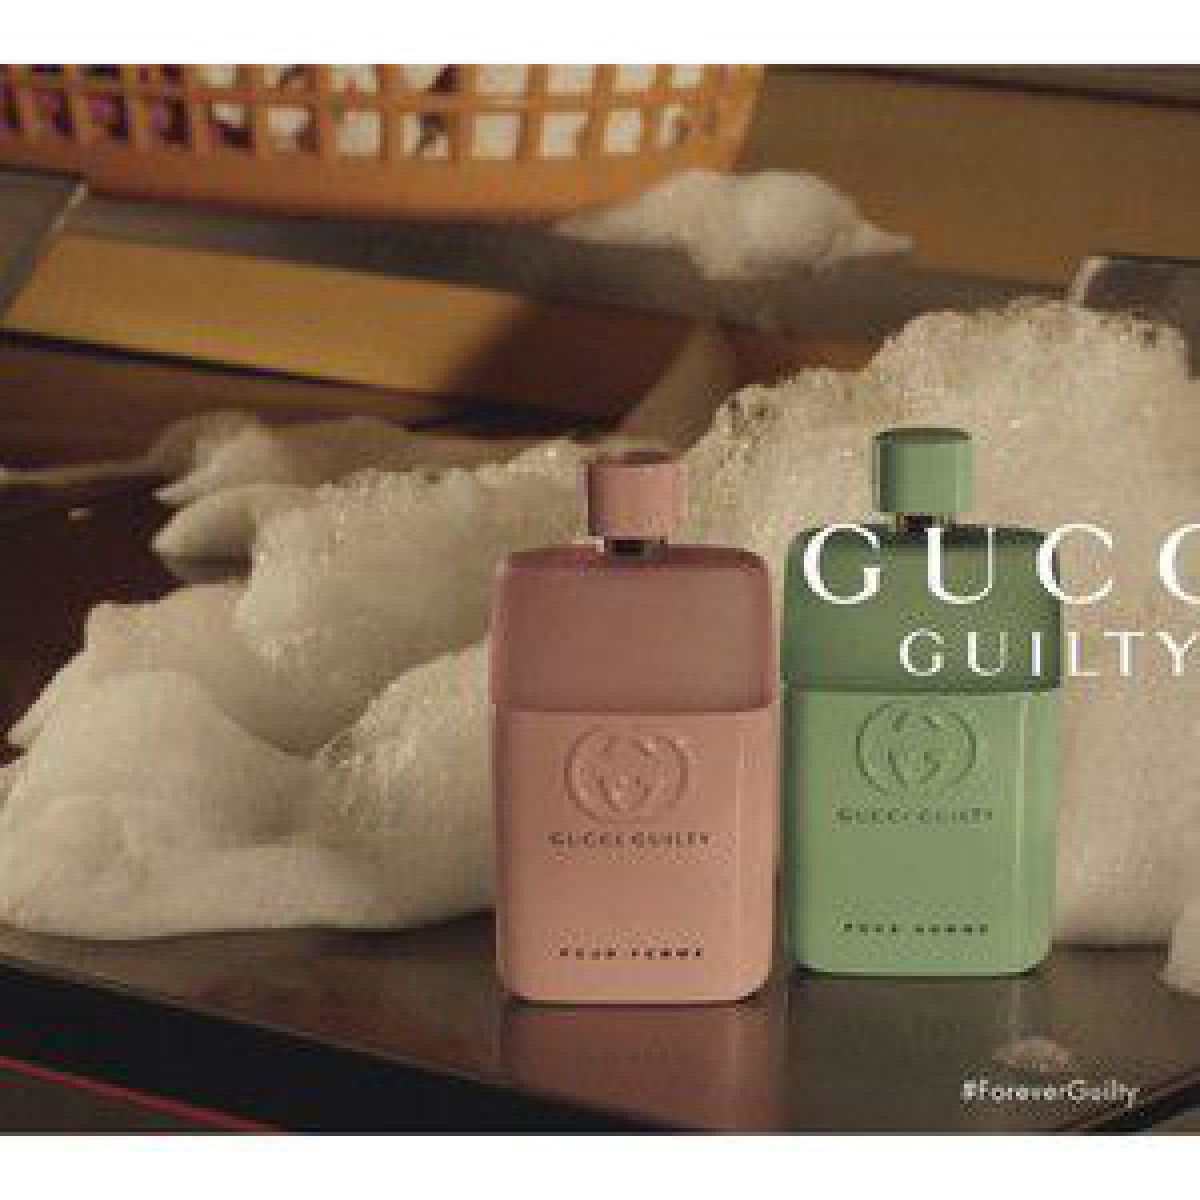 「グッチ」カップリング香水にバレンタインエディションが登場、パステルカラーの限定ボトルデザイン